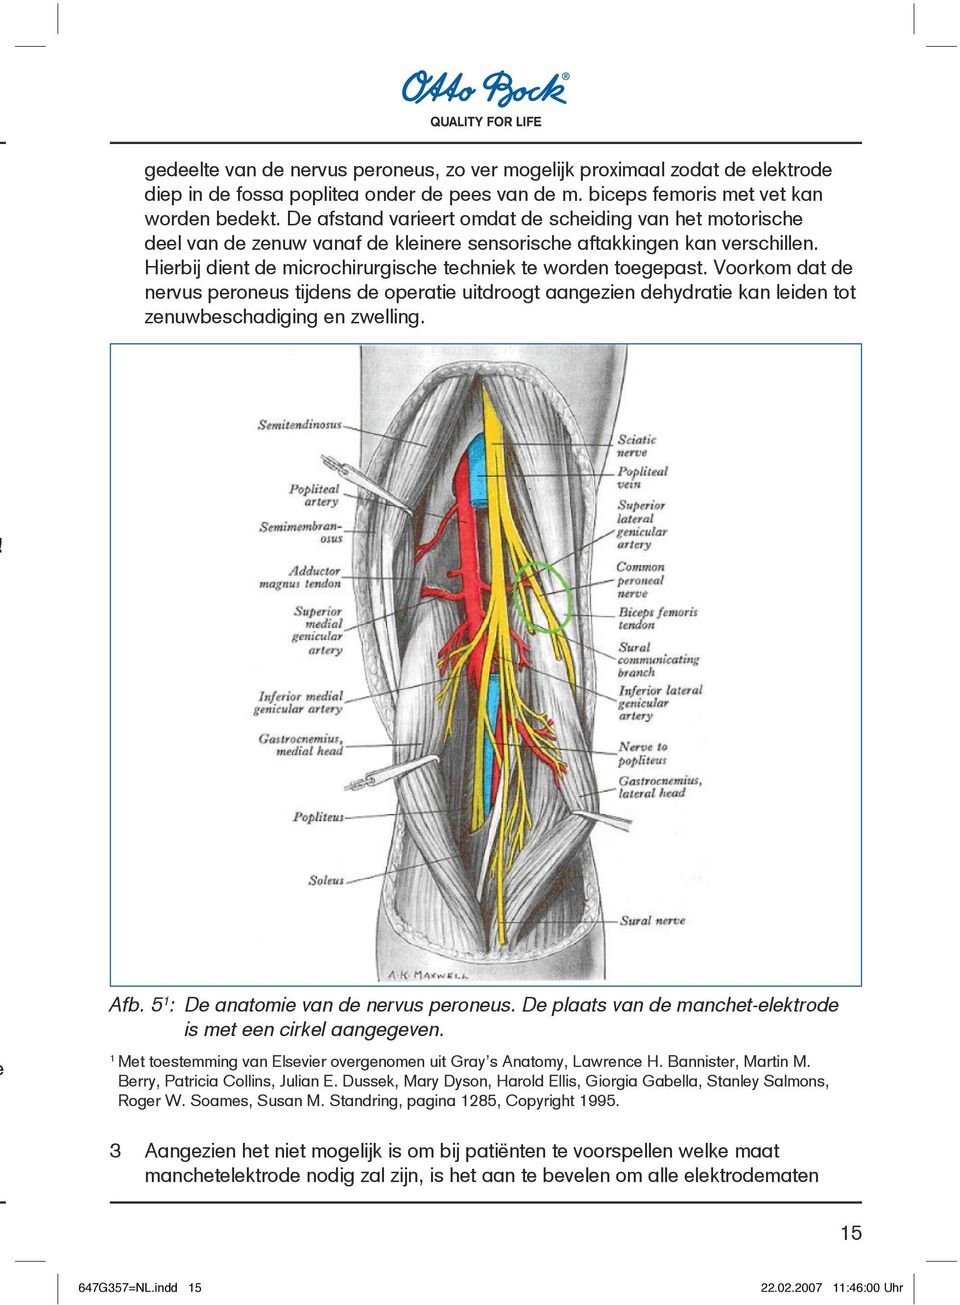 Voorkom at e nervus peroneus tijens e operatie uitroogt aangezien ehyratie kan leien tot zenuwbeschaiging en zwelling. Afb. 5 : e anatomie van e nervus peroneus.